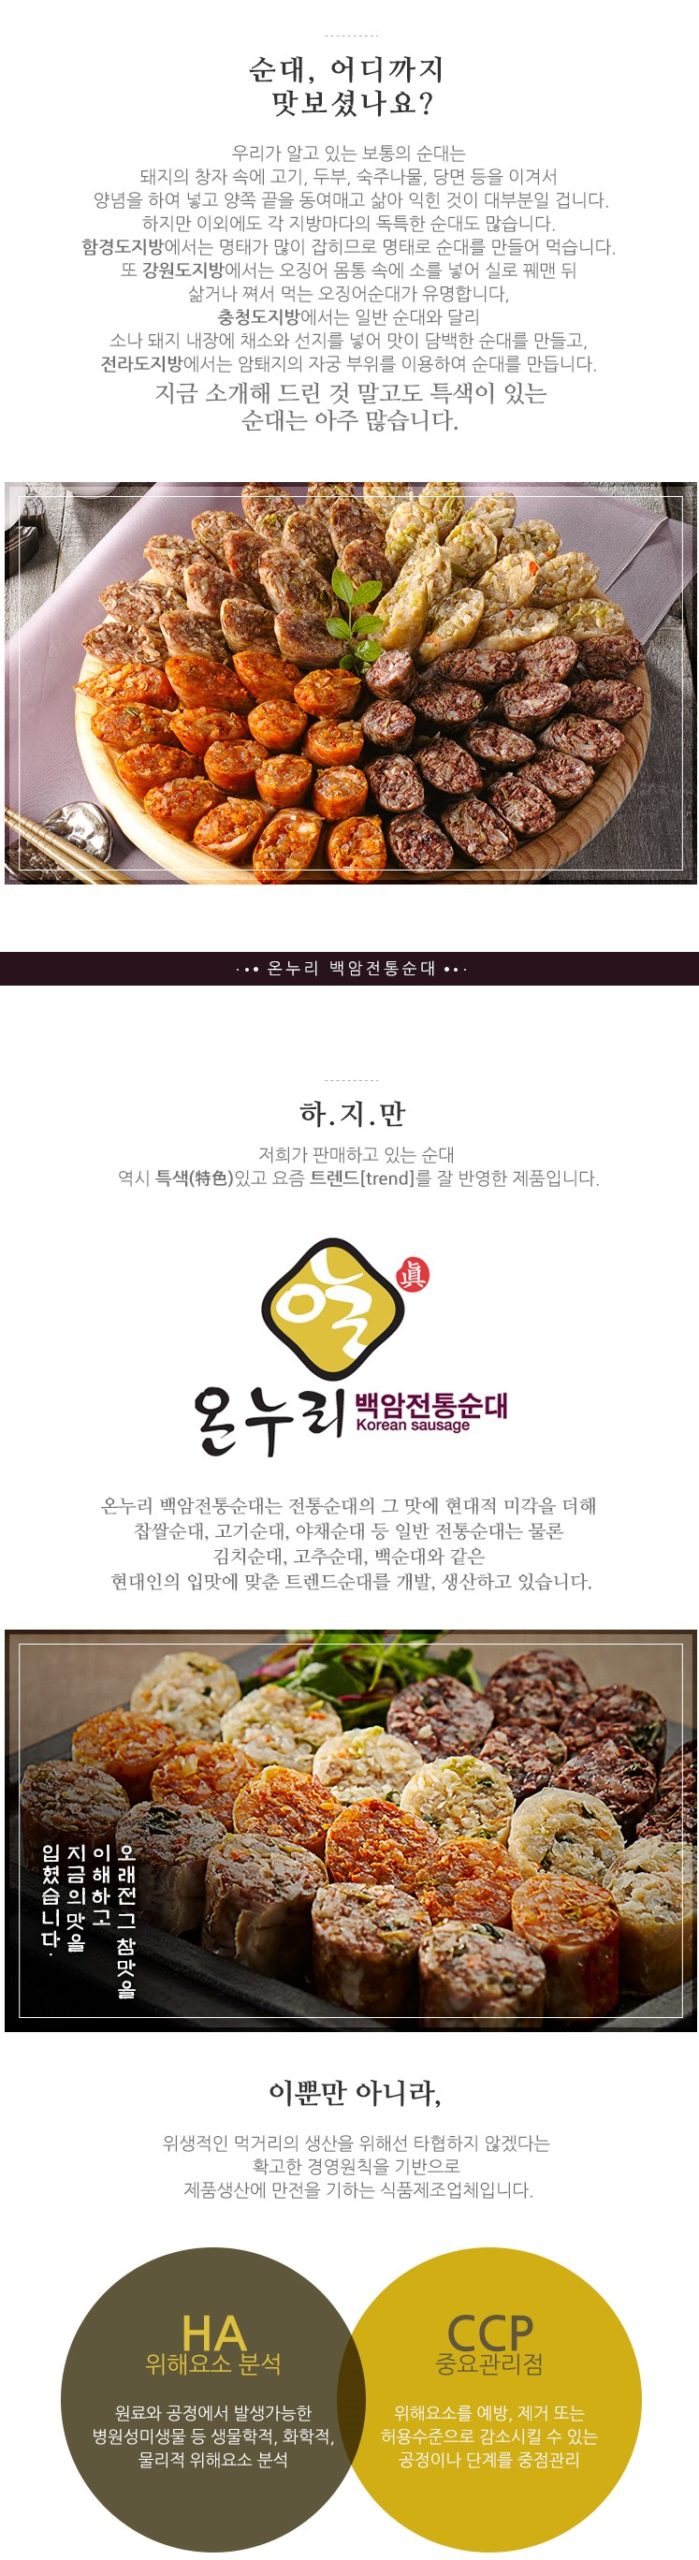 韓國食品-[누리맘] 삼색순대 420g